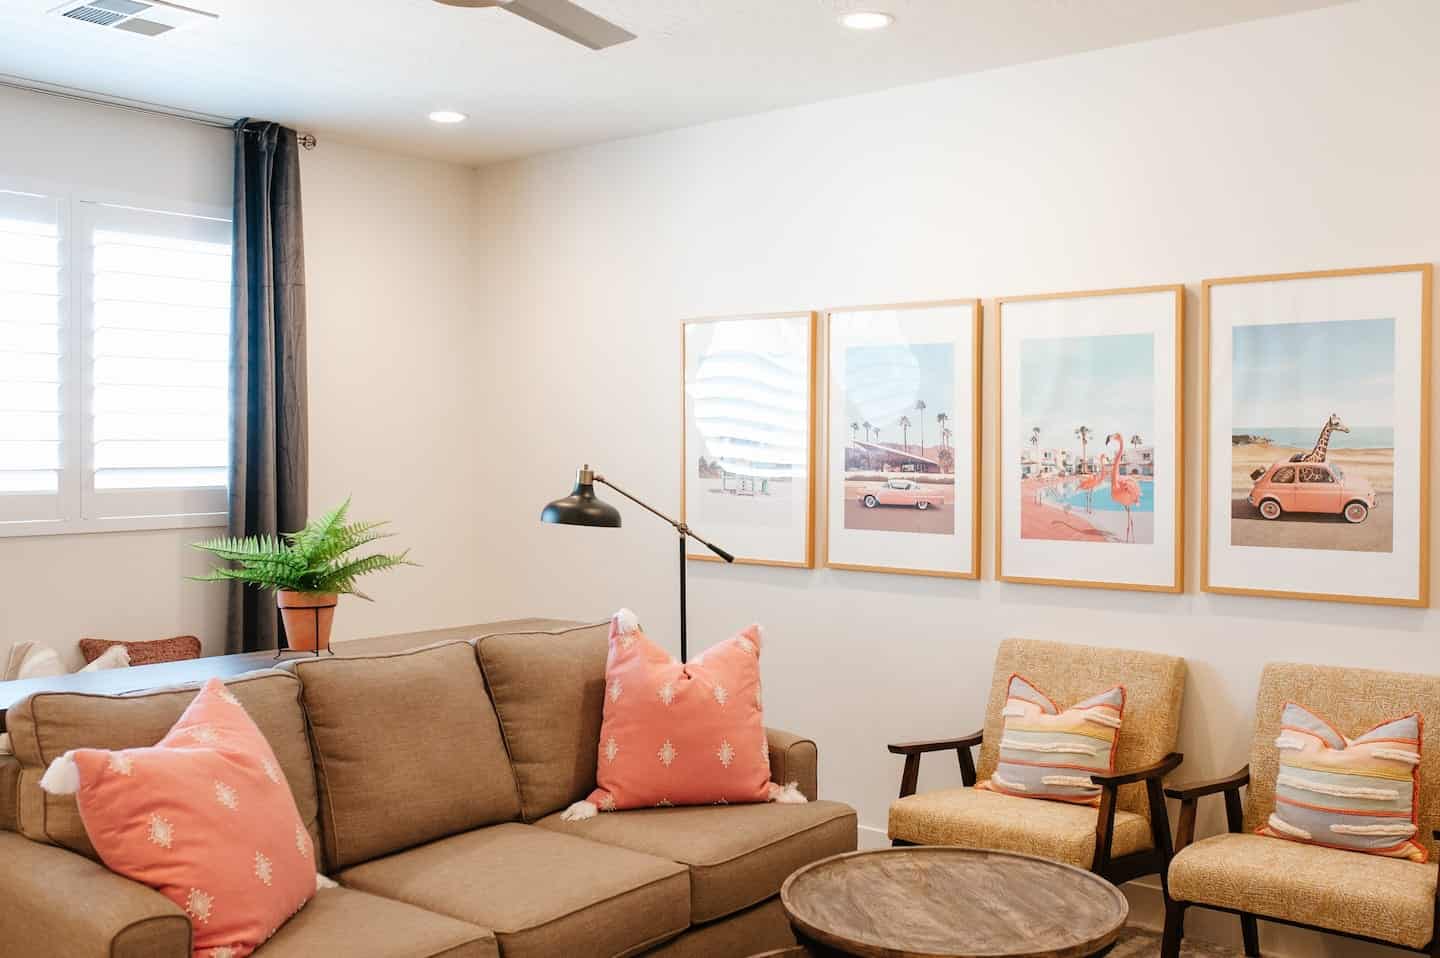 Image of Airbnb rental in St. George, Utah